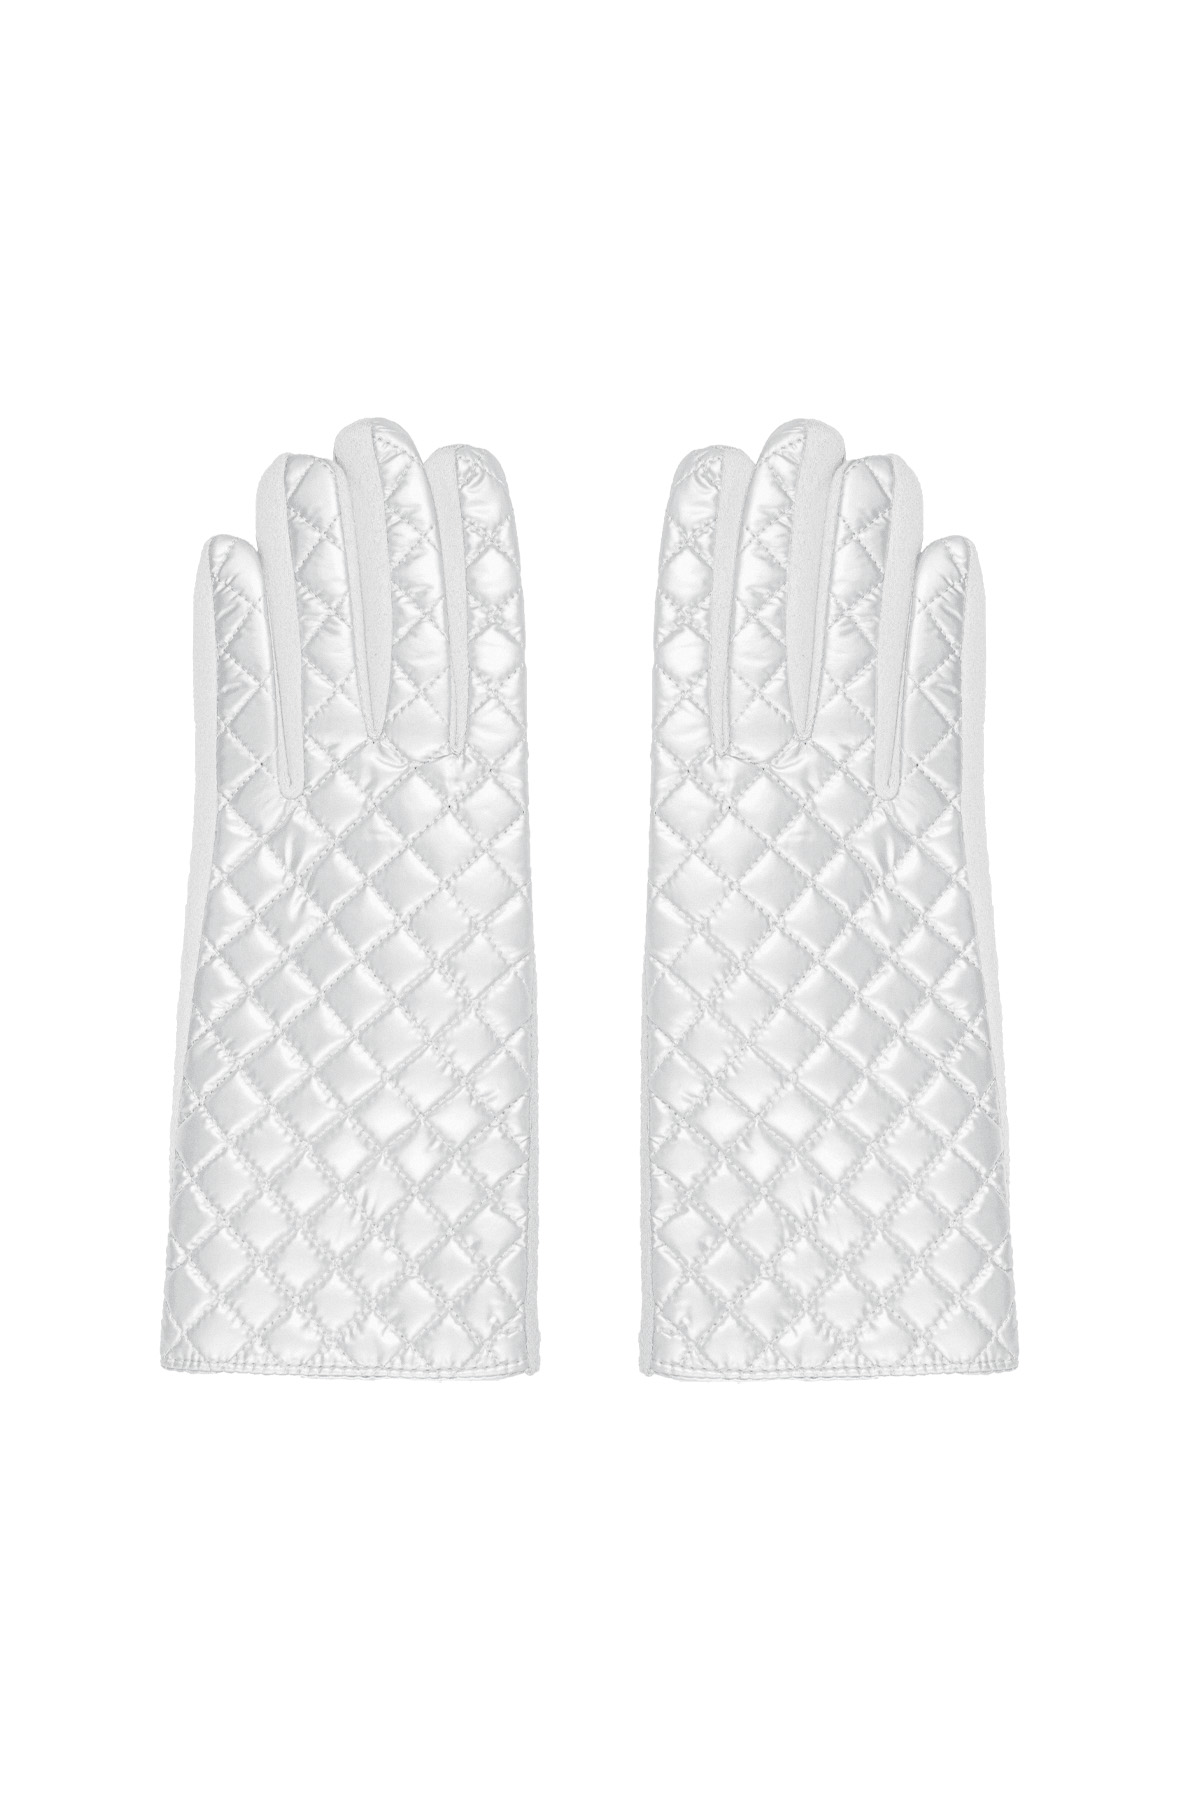 Handschuhe mit genähtem Muster - weiß 